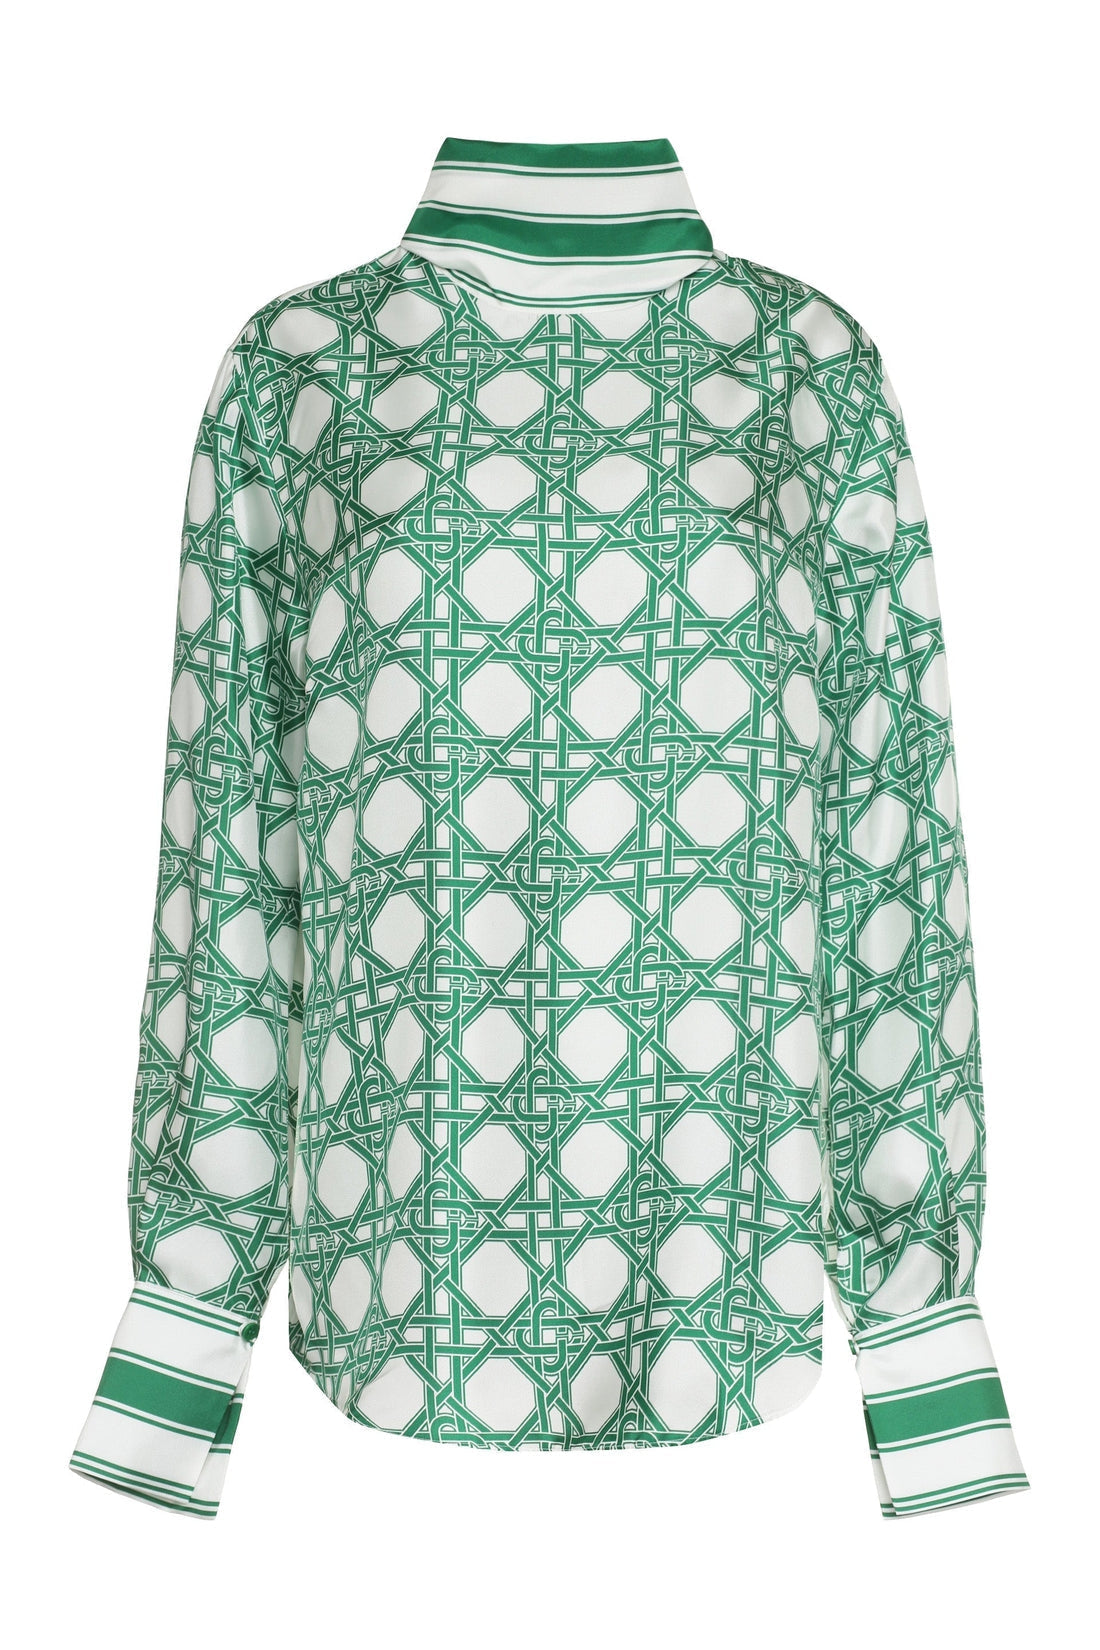 Casablanca-OUTLET-SALE-Printed silk blouse-ARCHIVIST